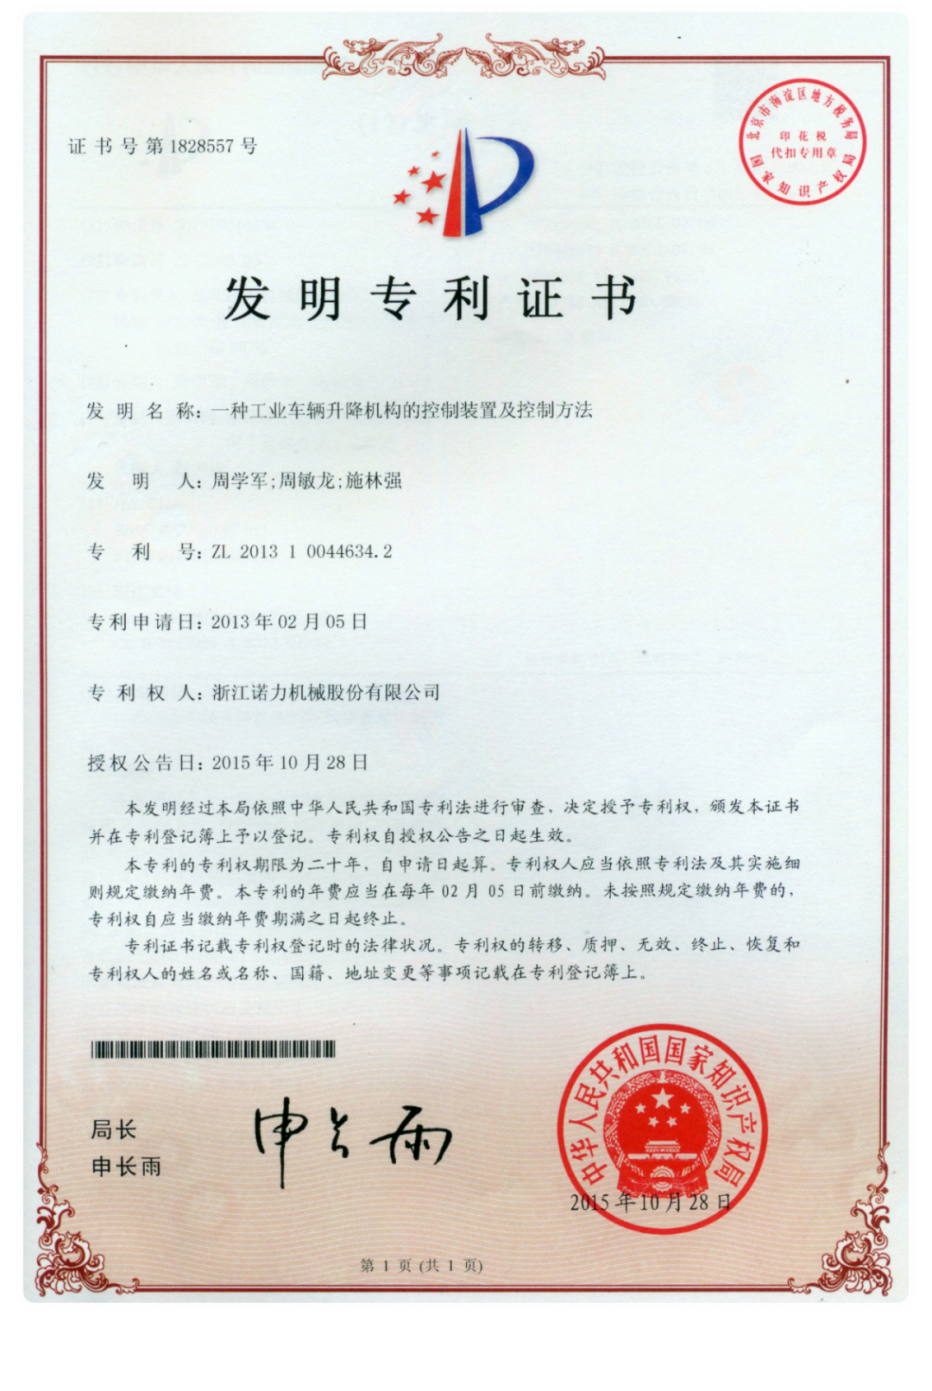 諾力股份首次獲得中國專利獎